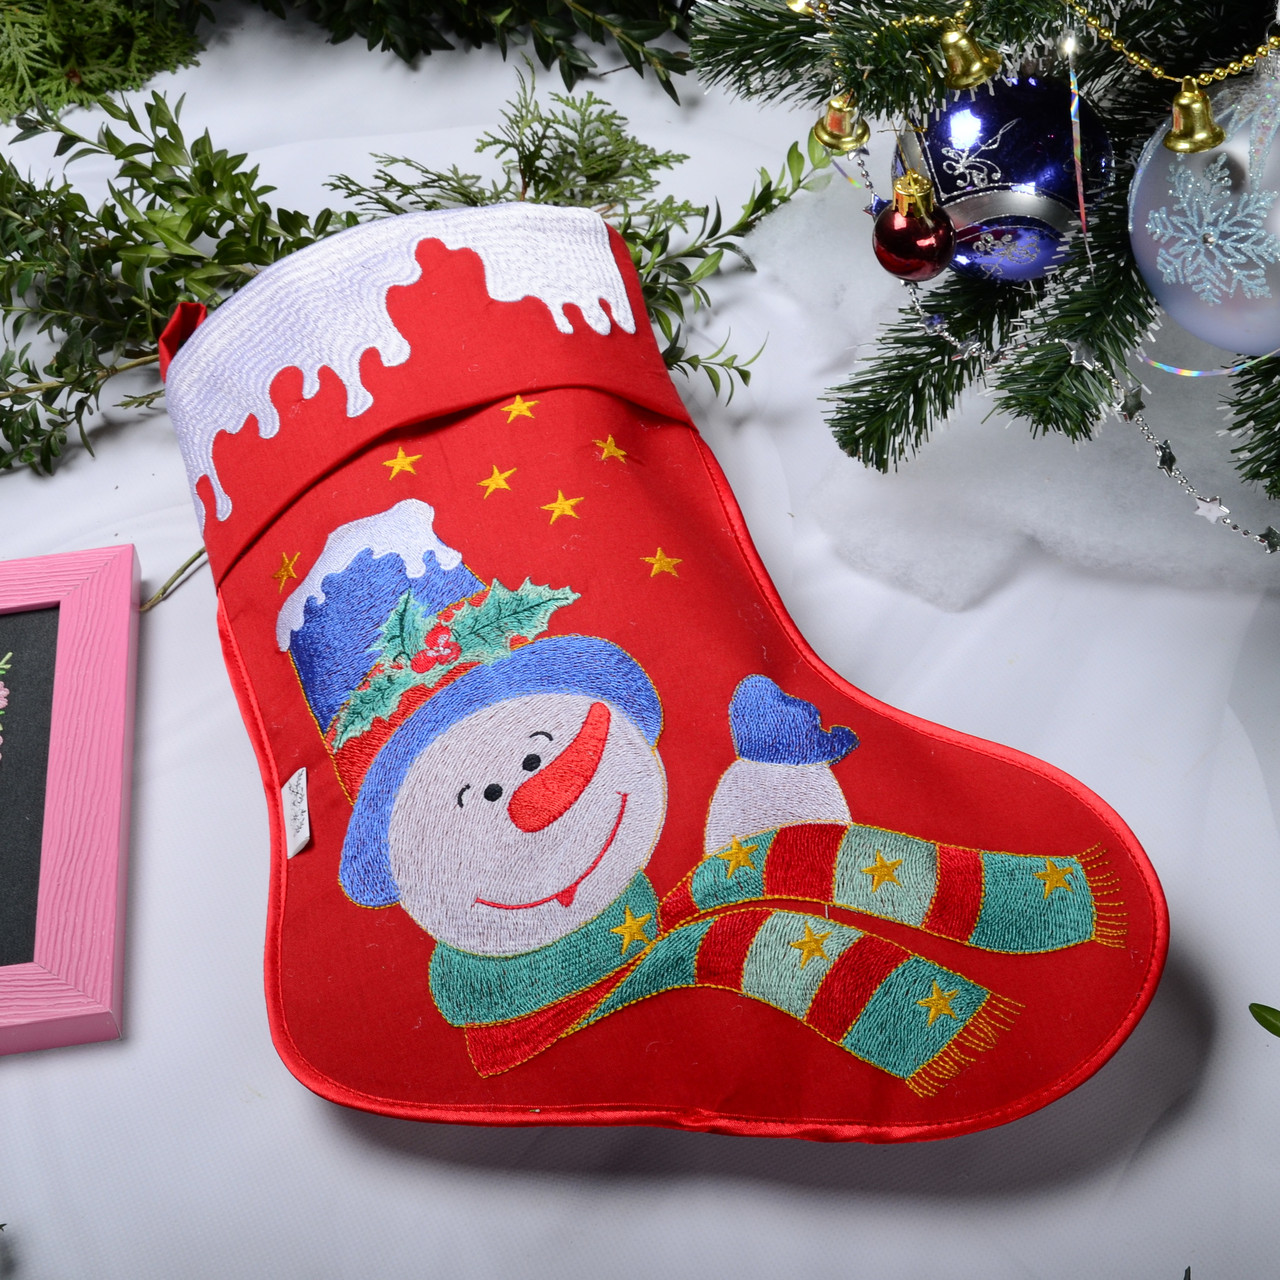 Новорічний подарунковий чобіт, Різдвяний носок, з вишивкою, червоного кольору, вишивка - сніговик.